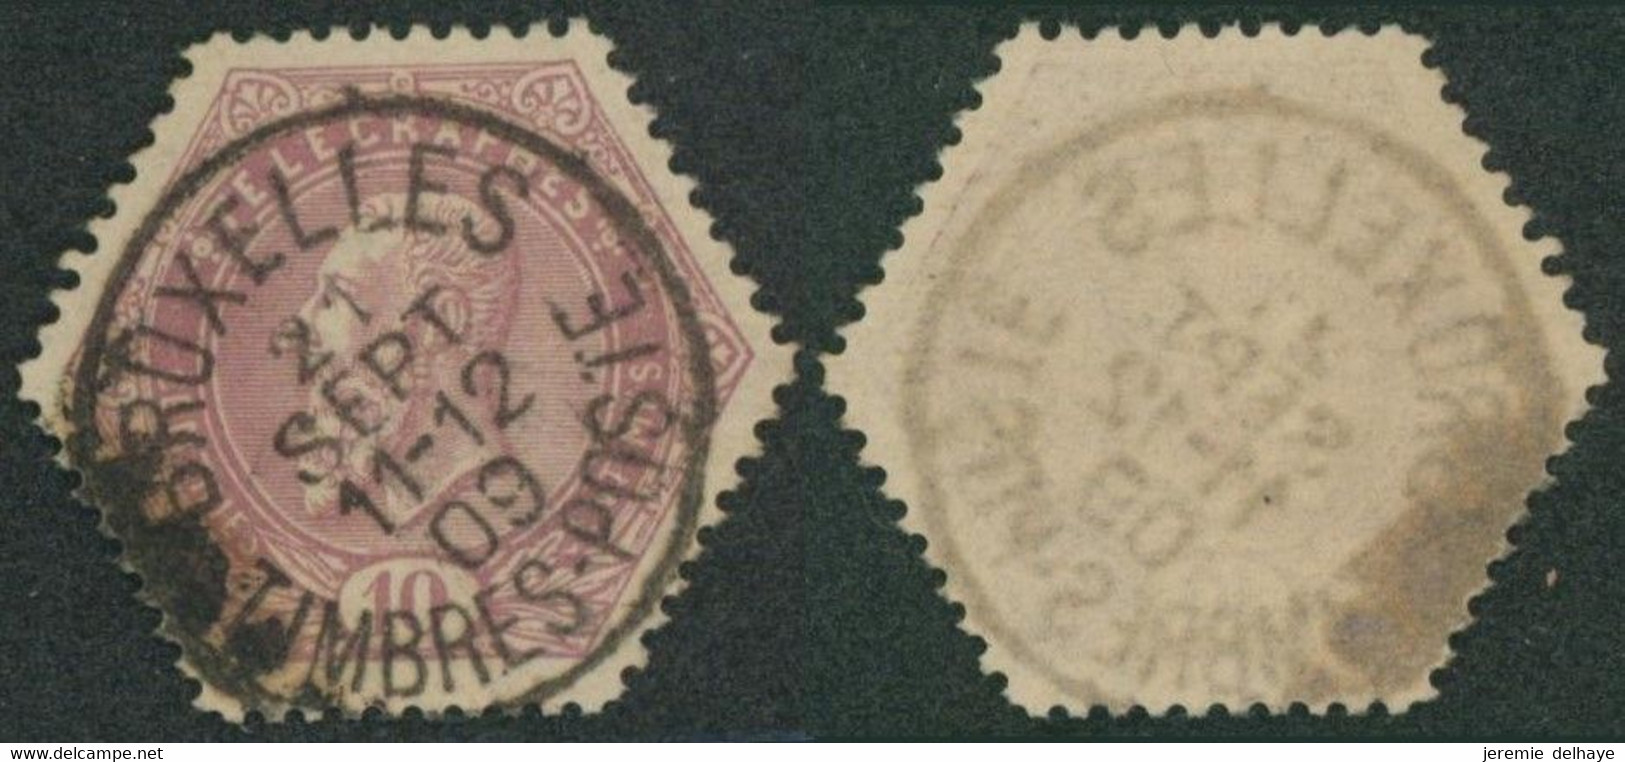 Télégraphe - TG11 Obl Simple Cercle "Bruxelles / Timbre-poste" (1909). Pas Courant, Rare. - Telegraphenmarken [TG]